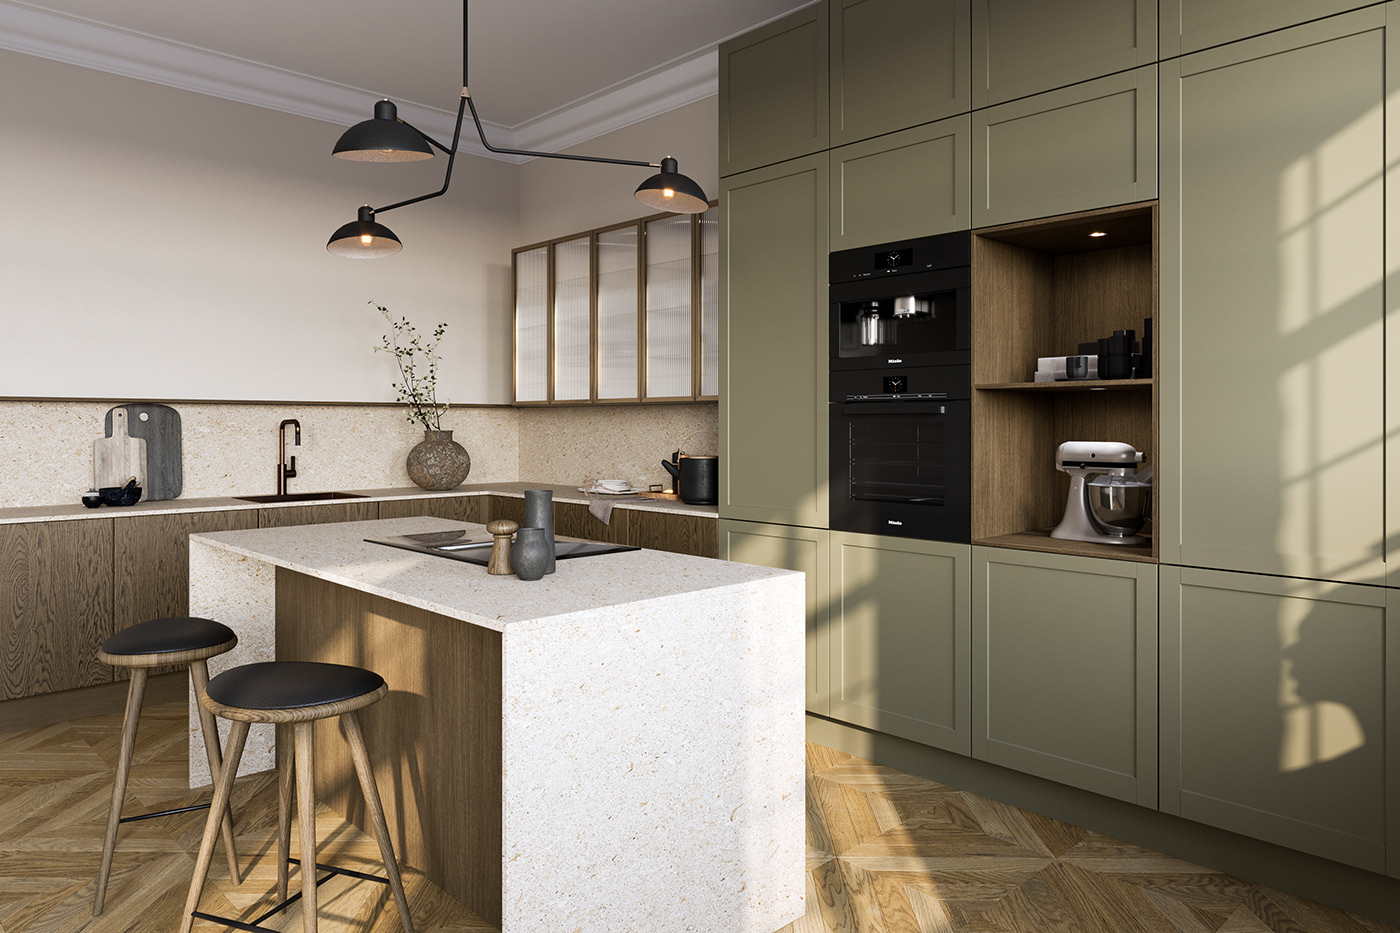 3ds max 3D corona renderer Render kitchen kitchen design visualization archviz CGI architecture